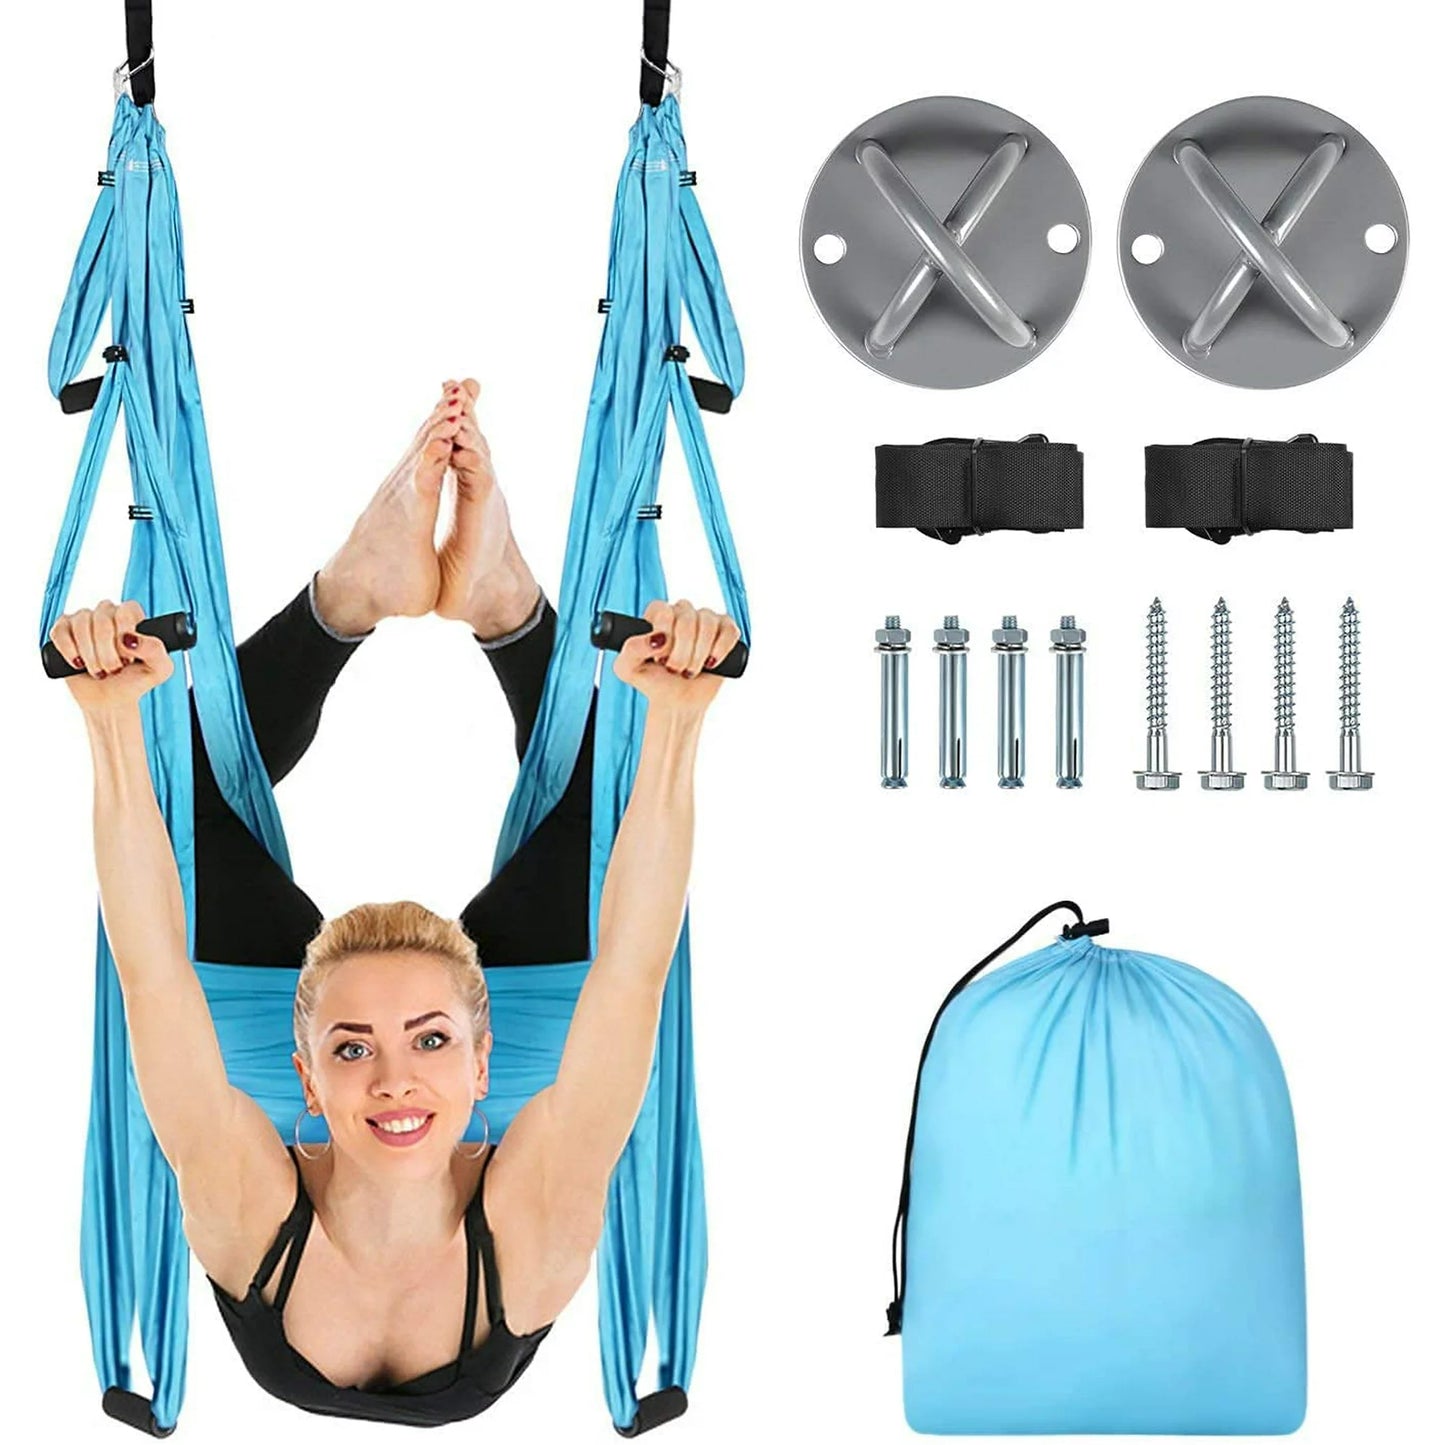 空中瑜珈飛行瑜珈鞦韆瑜珈吊床吊帶吊帶倒立工具健身房家用健身藍色